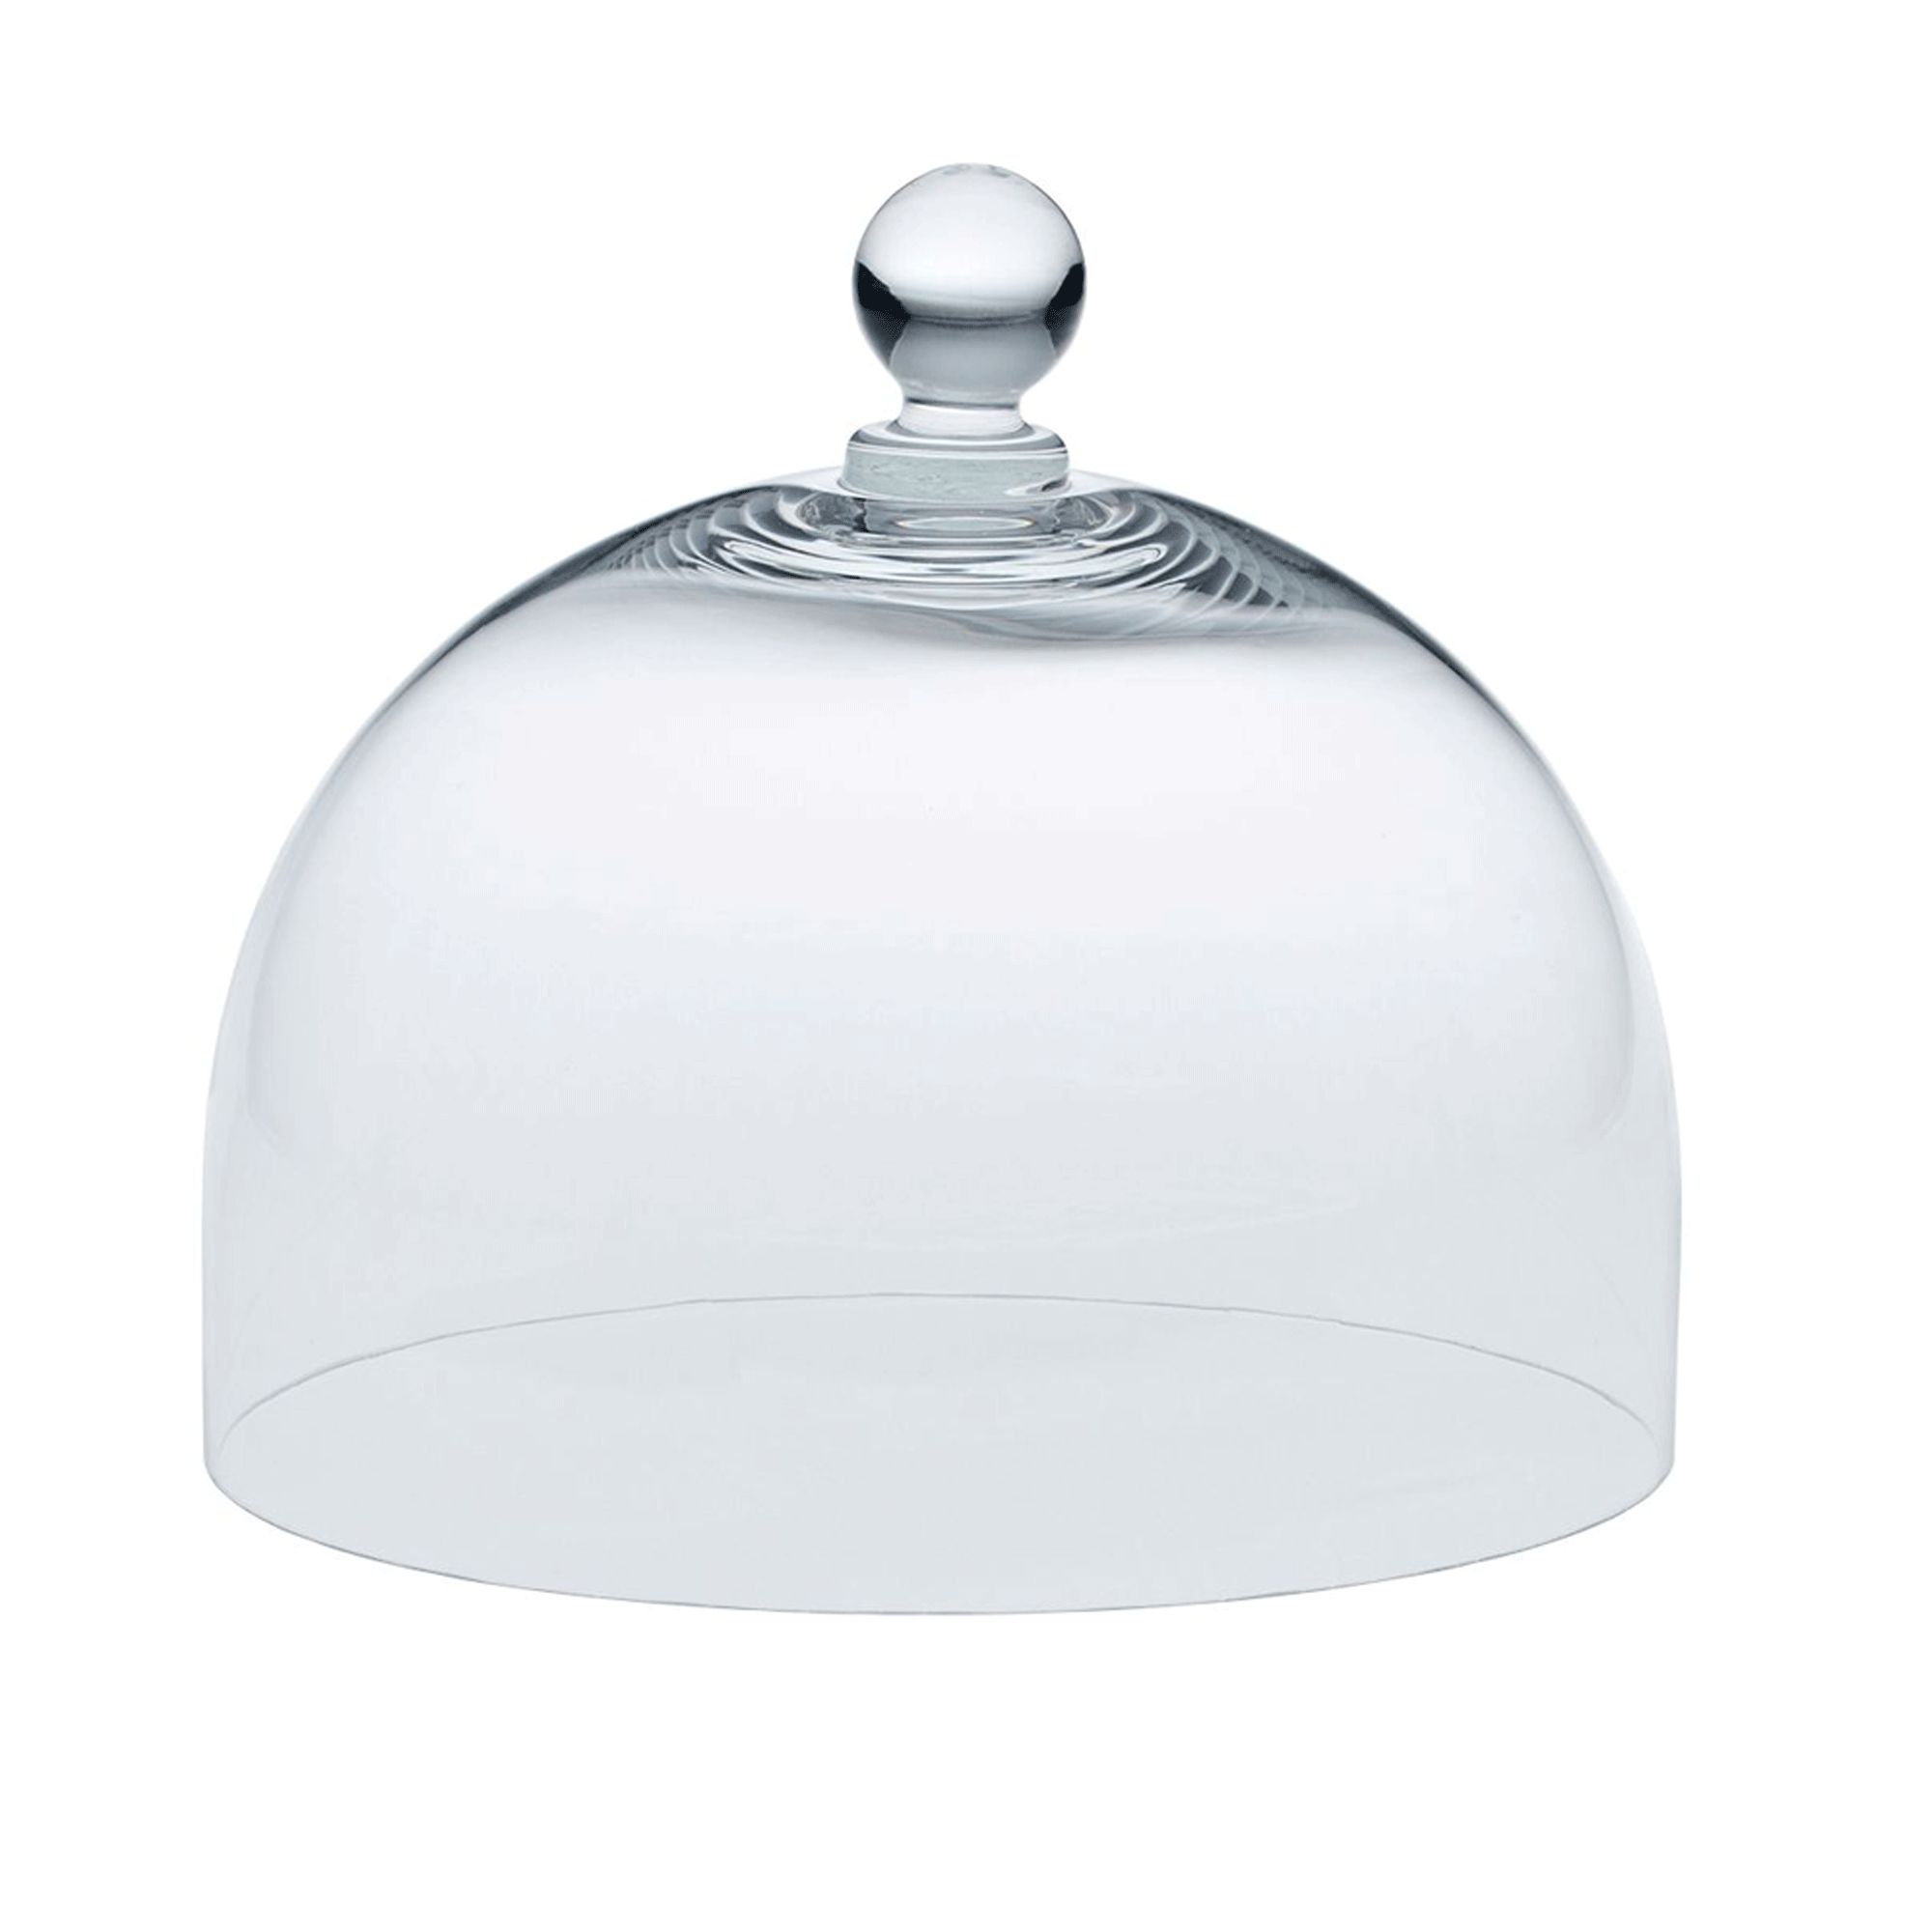 Birkmann - Glass dome M, Ø 22 cm